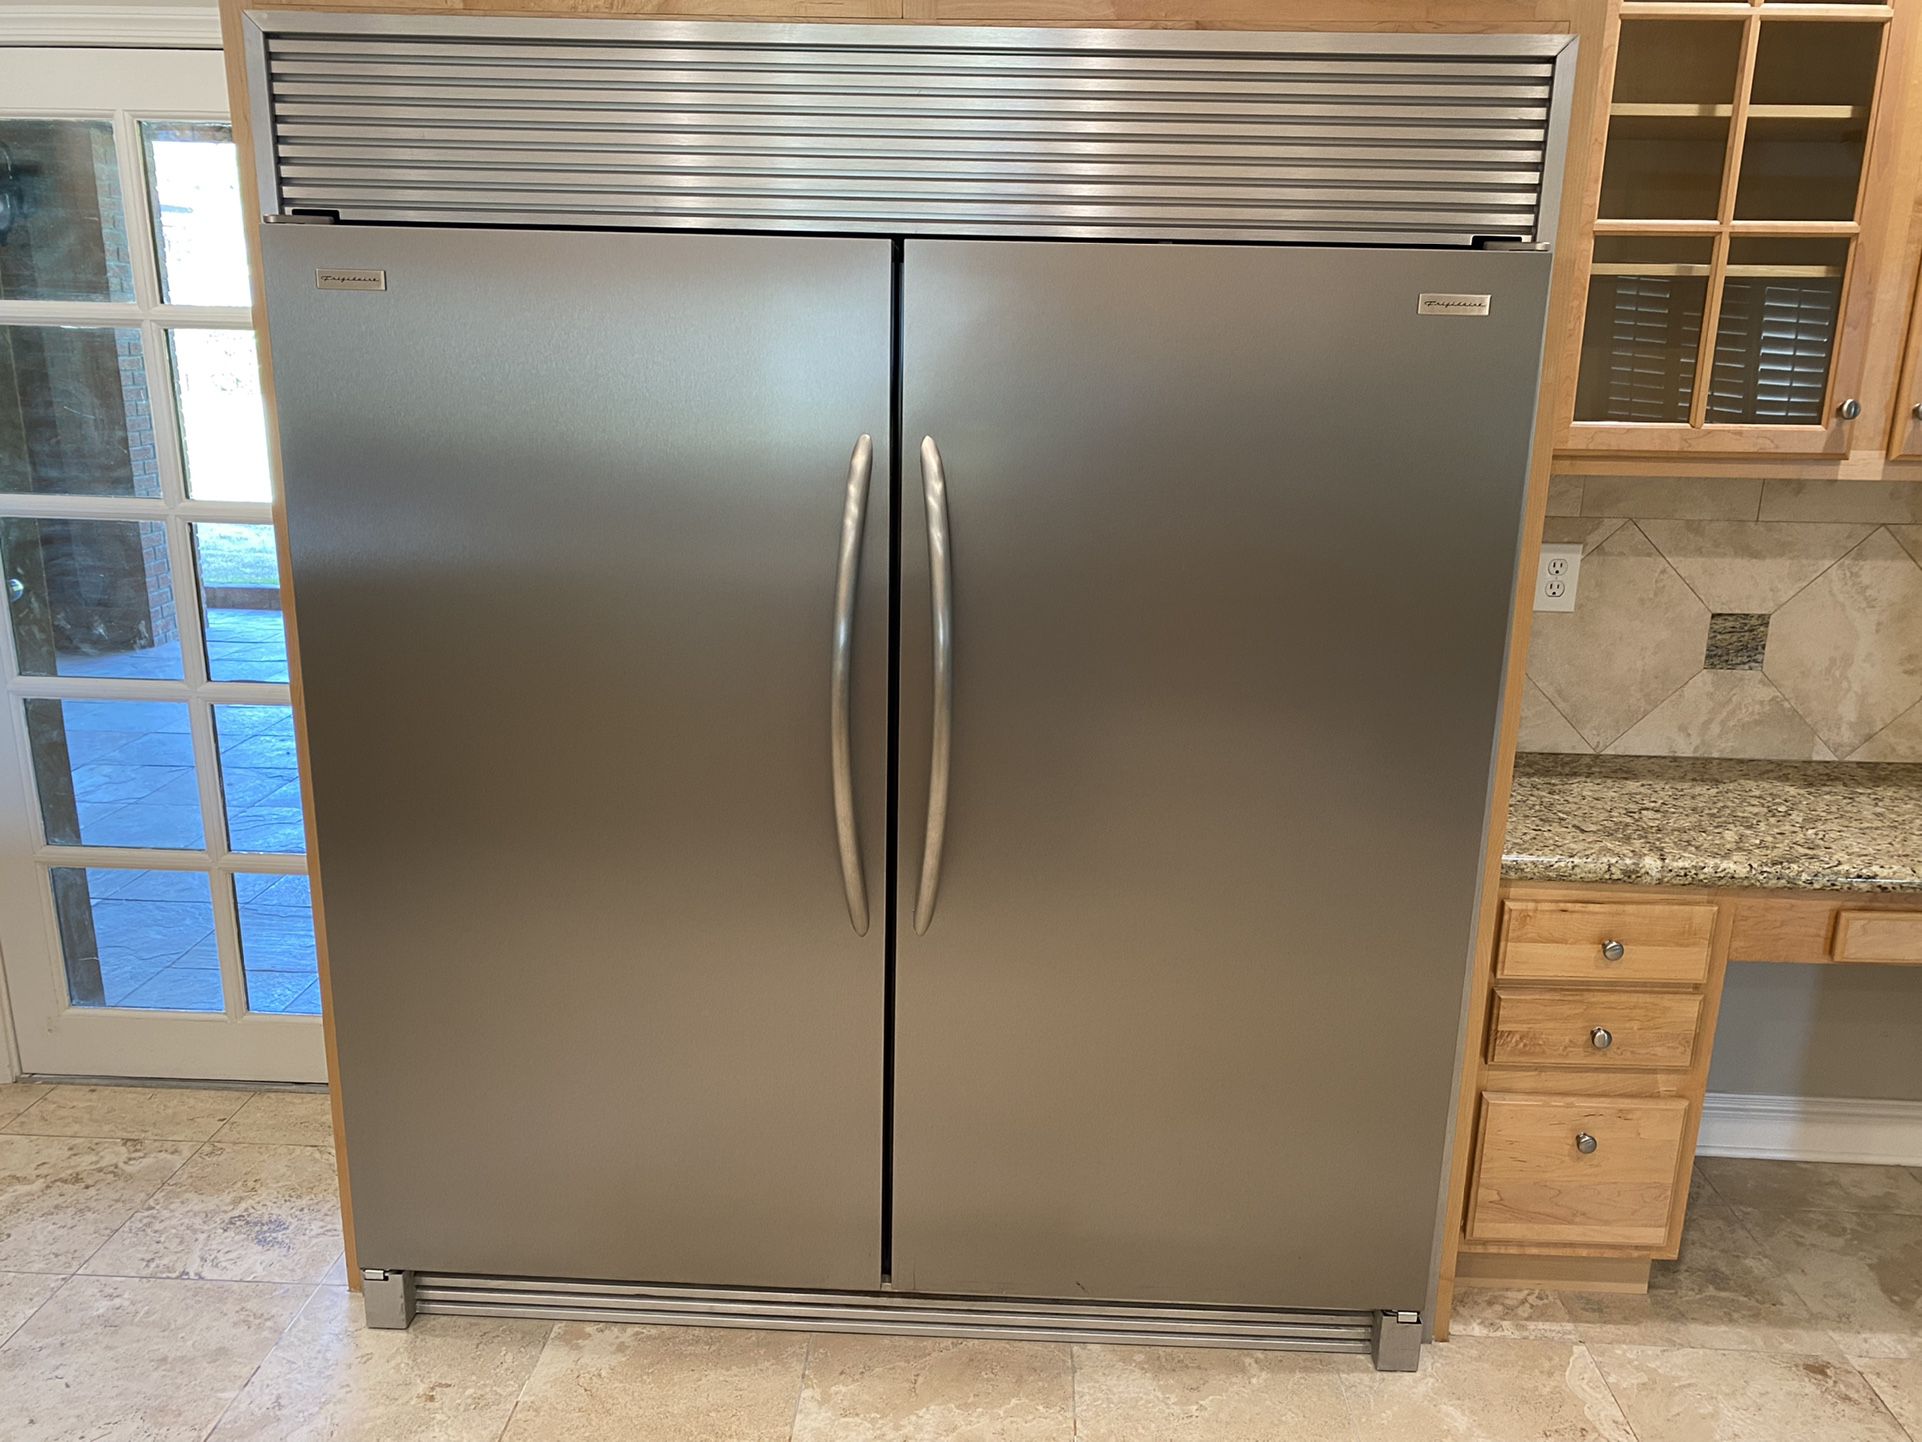 Frigidaire Professional Series Refrigerator And Freezer